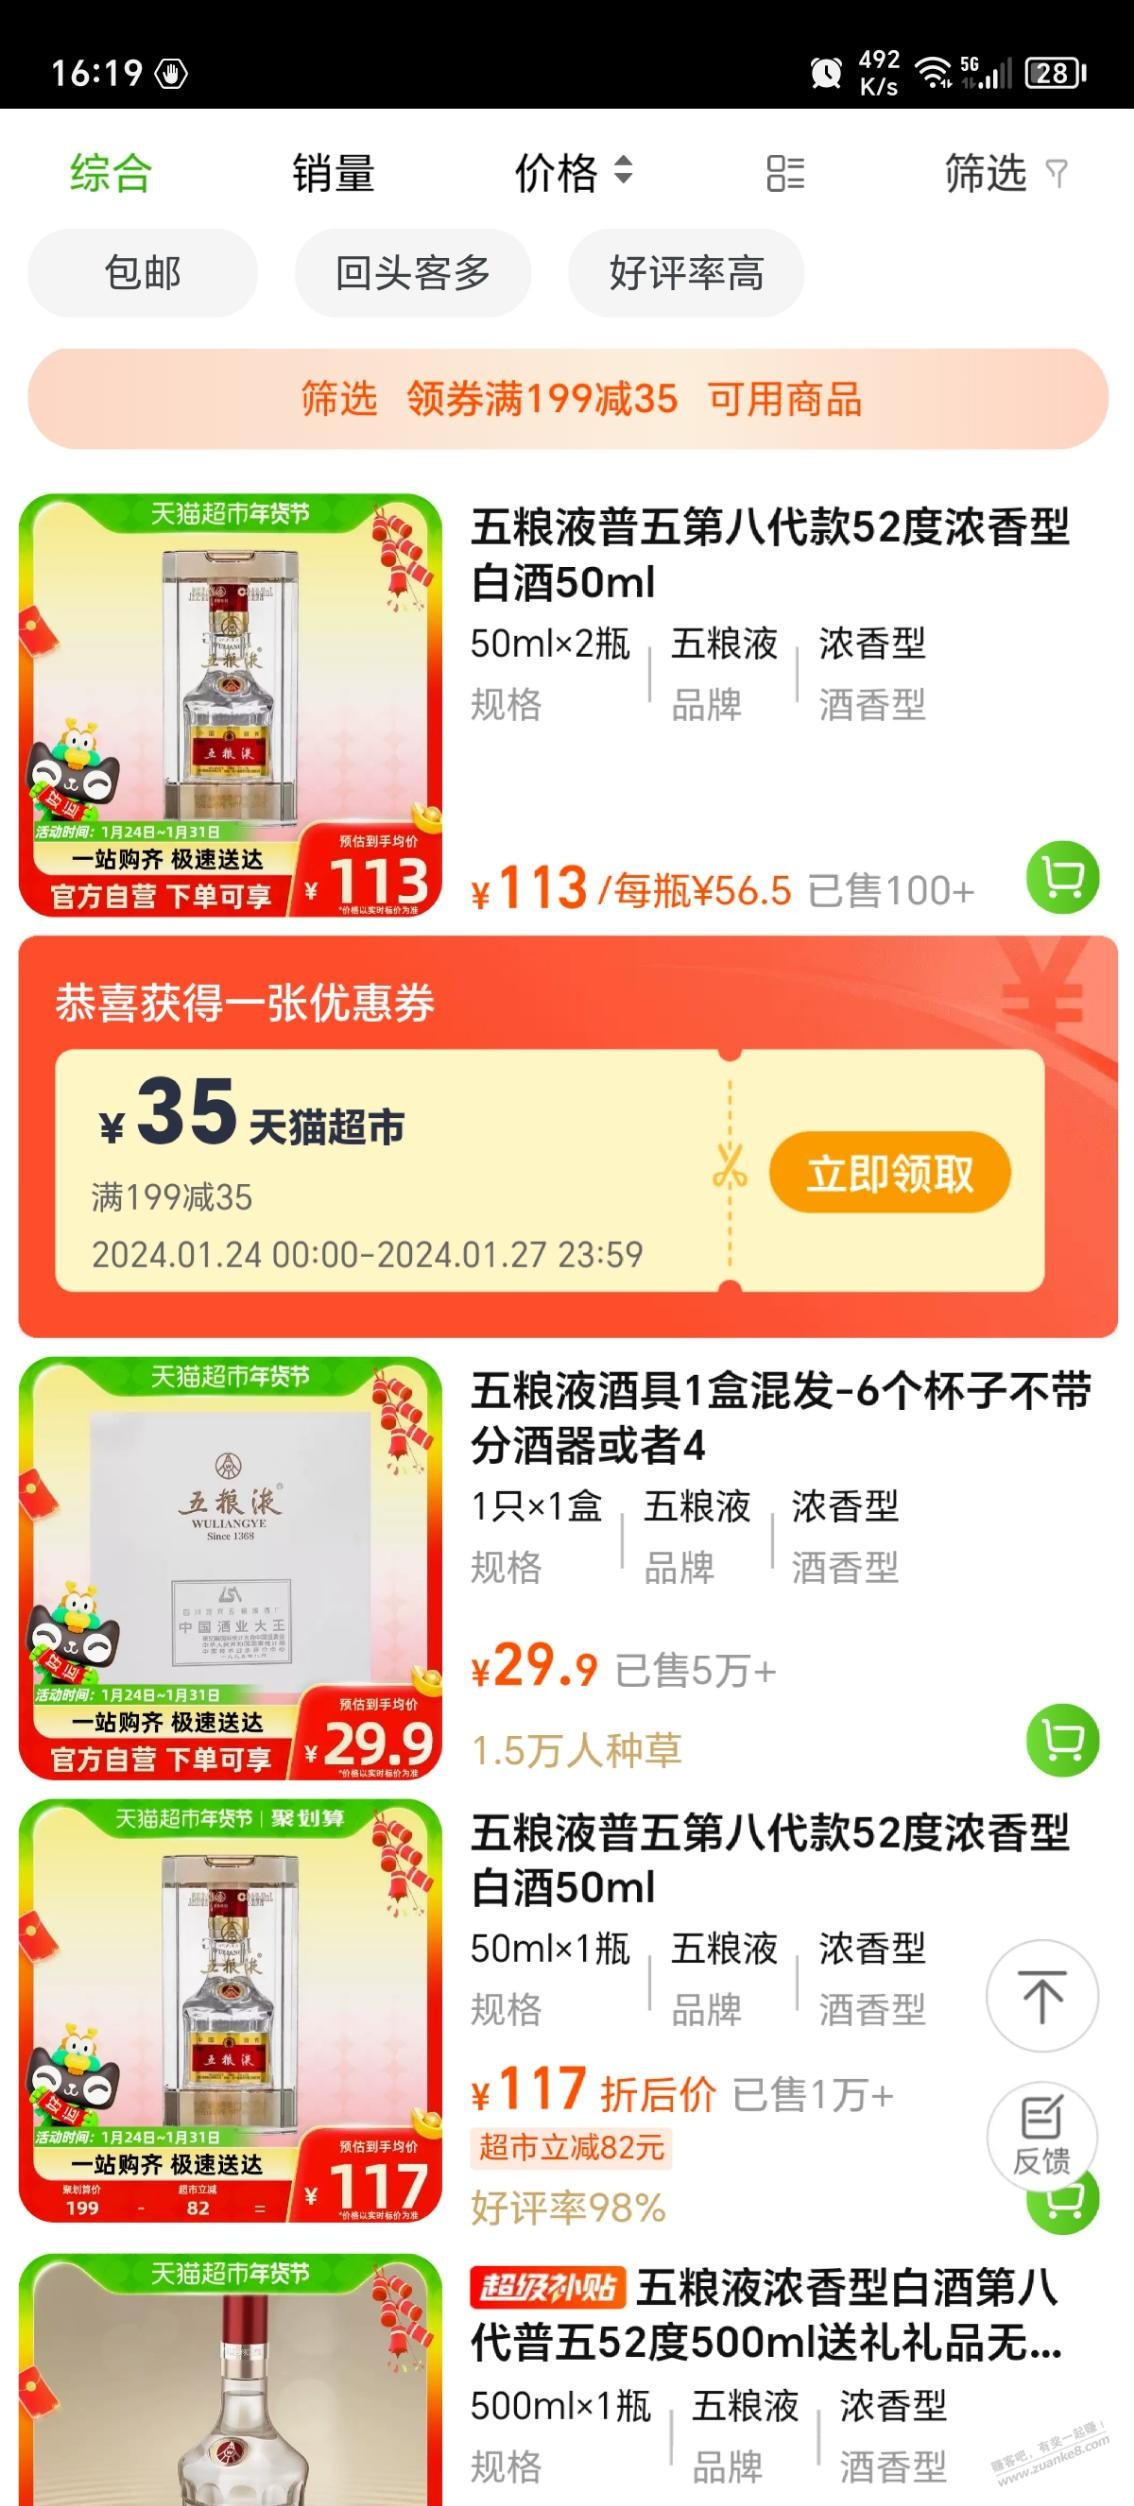 天猫超市500+的五粮液-需要撕!-惠小助(52huixz.com)